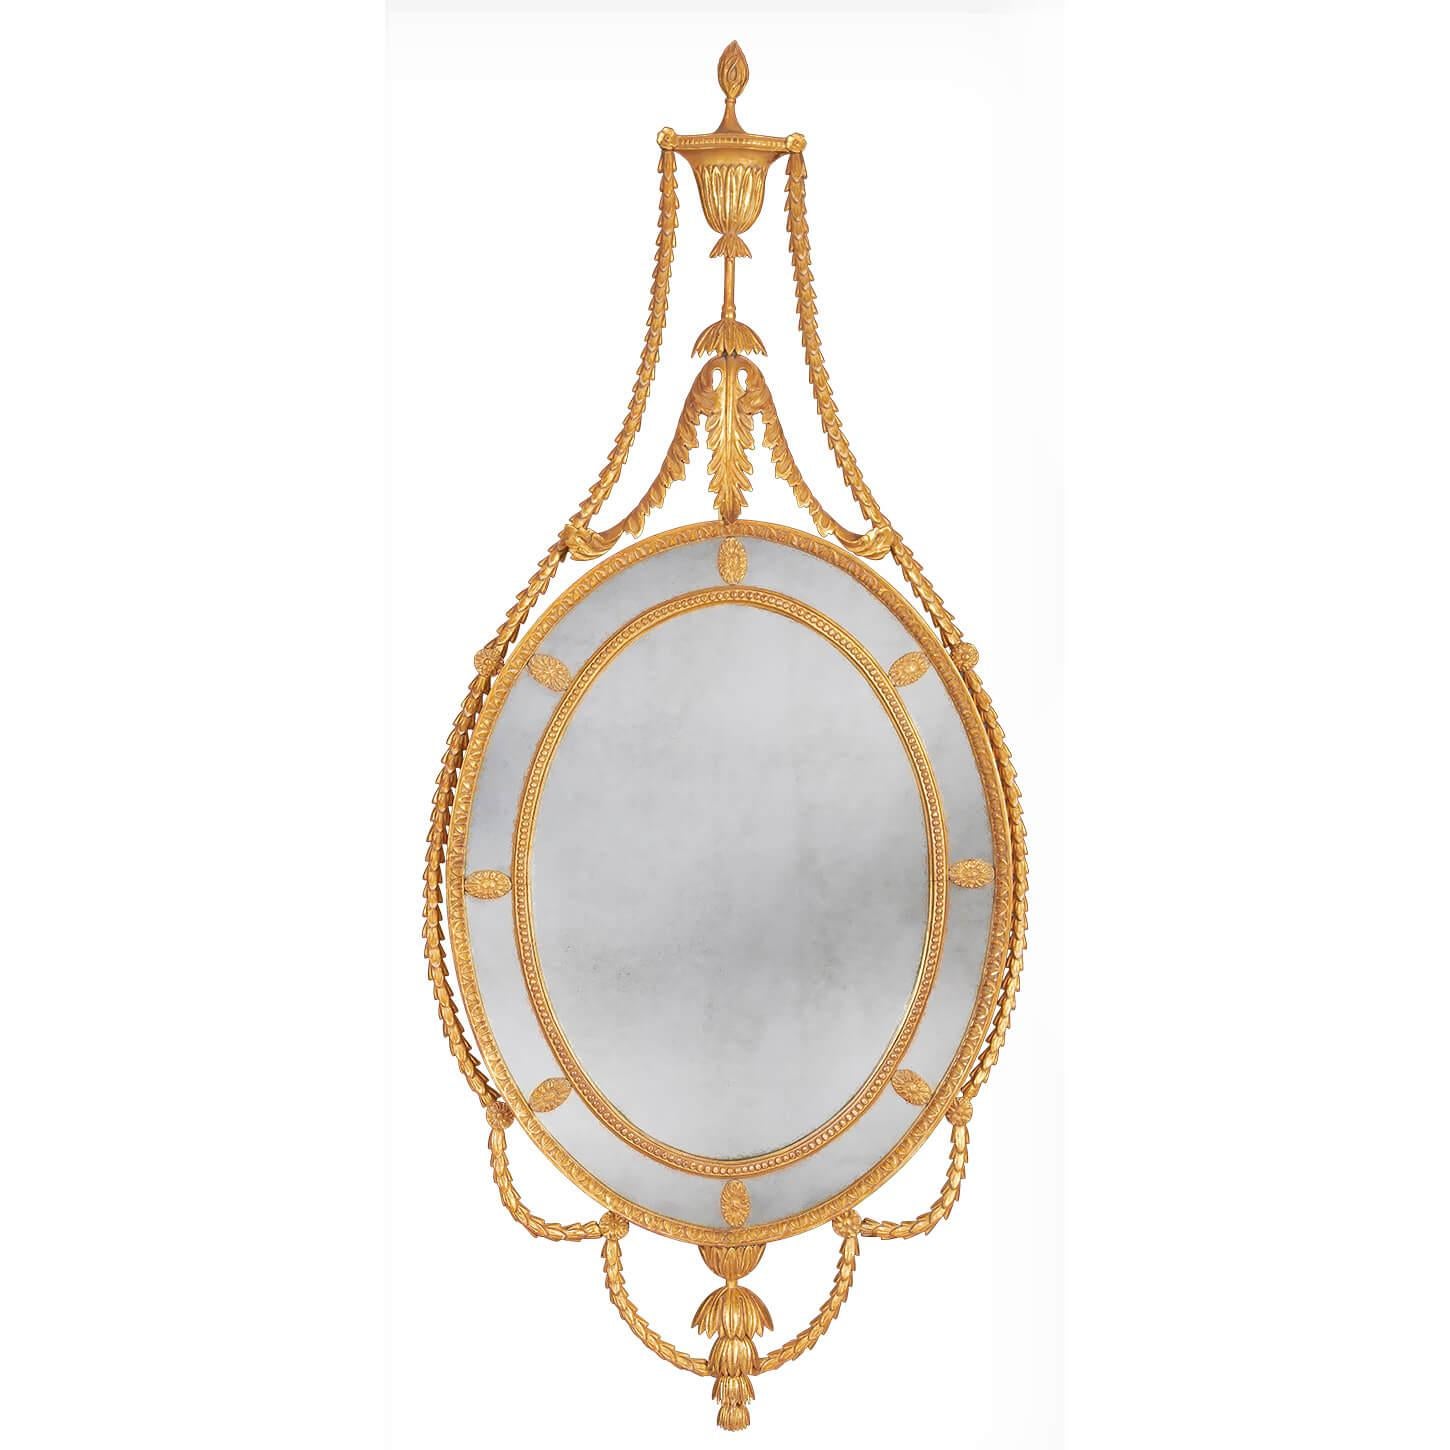 Ein Paar geschnitzte Spiegel aus vergoldetem George-III-Holz im Adams-Design mit blattgeschnitztem Außenrahmen und perlengeschnitztem Innenrahmen, die umlaufenden Randgläser sind mit ovalen Blumenkopfpaternen versehen. Die Scheitelform einer